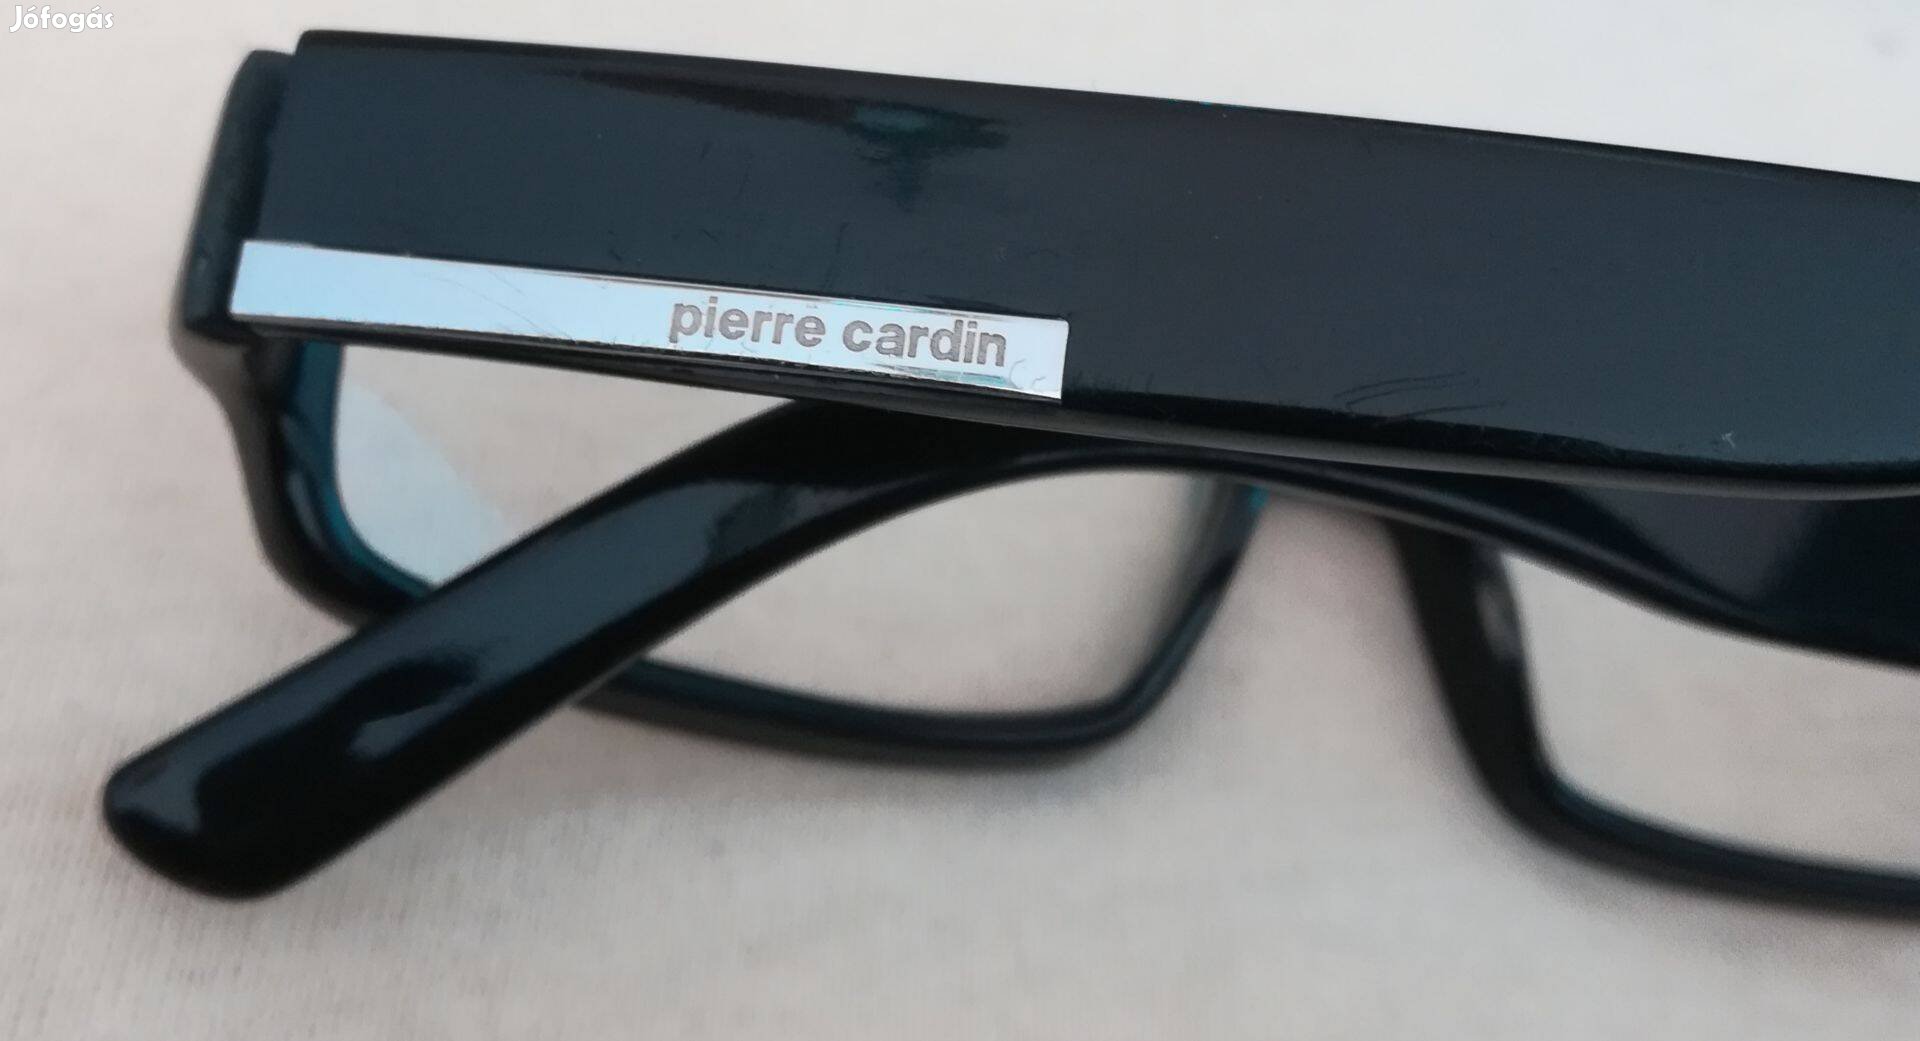 Szemüveg keret, Pierre Cardin,unisex,olcsón!/53